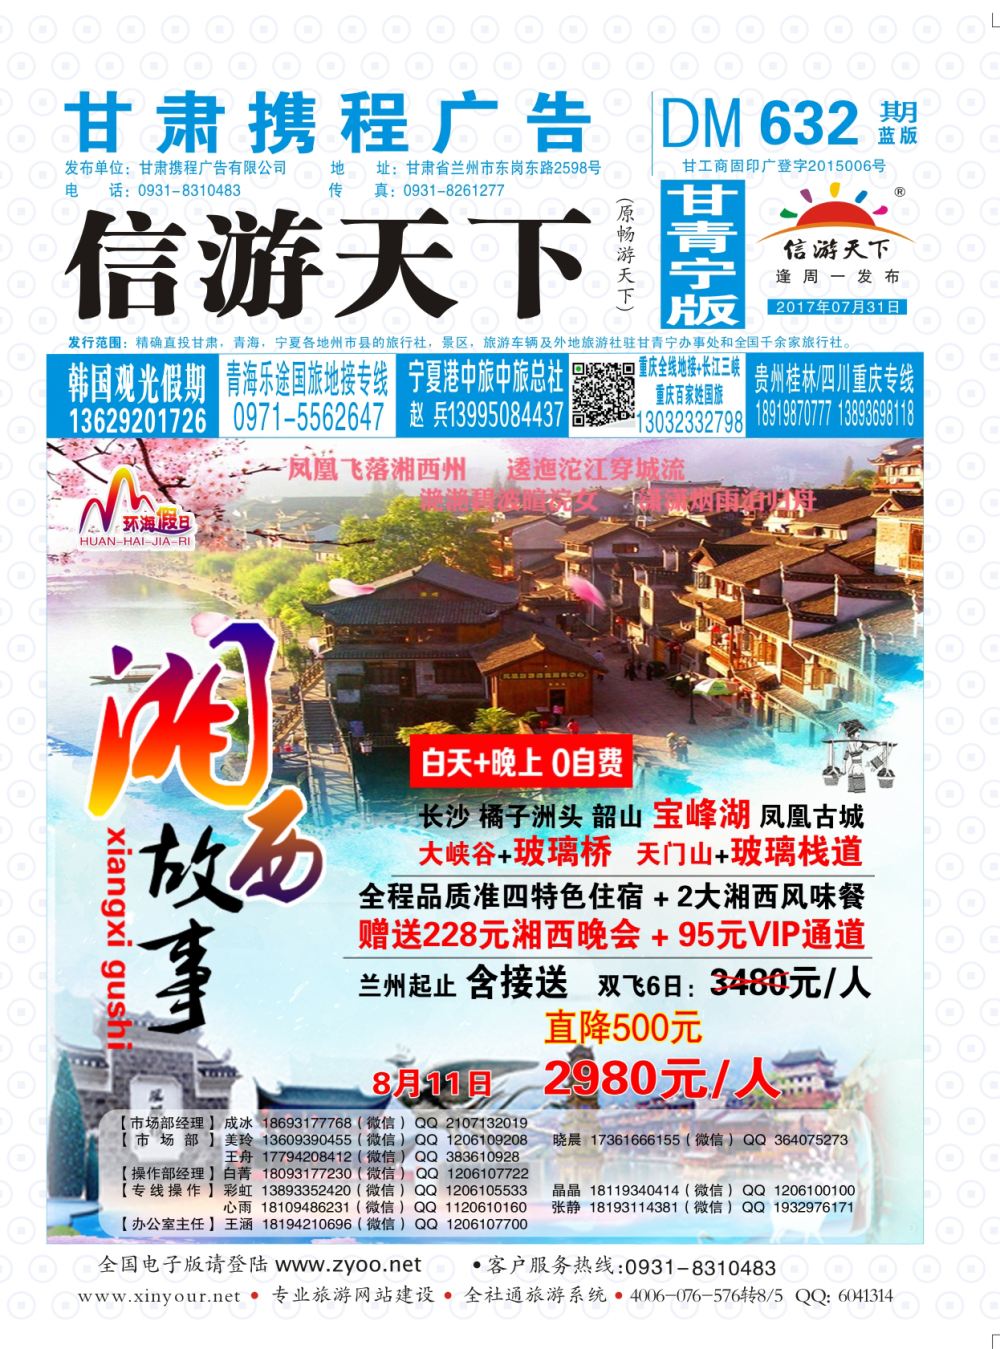 632期       甘肃龙源国际旅行社-环海假日  封面